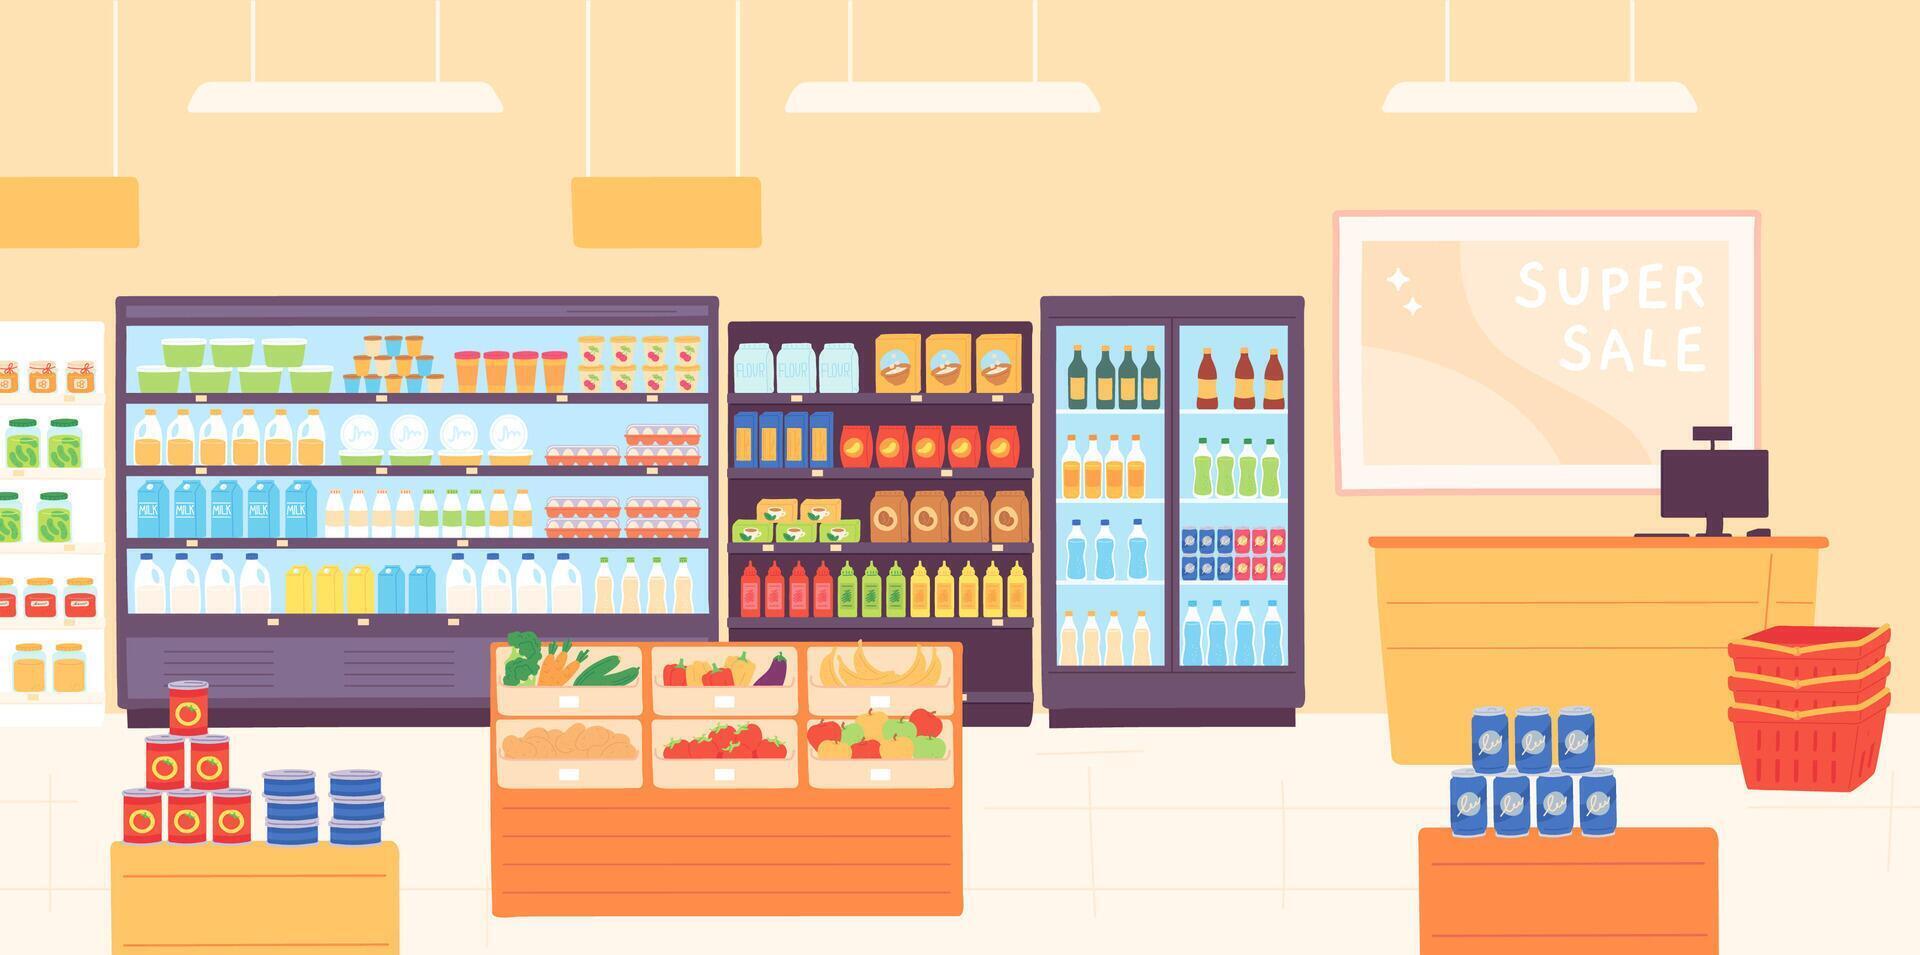 épicerie magasin intérieur. supermarché avec nourriture produit étagères, racks avec laitier, des fruits, frigo avec les boissons et la caissière. boutique vecteur concept